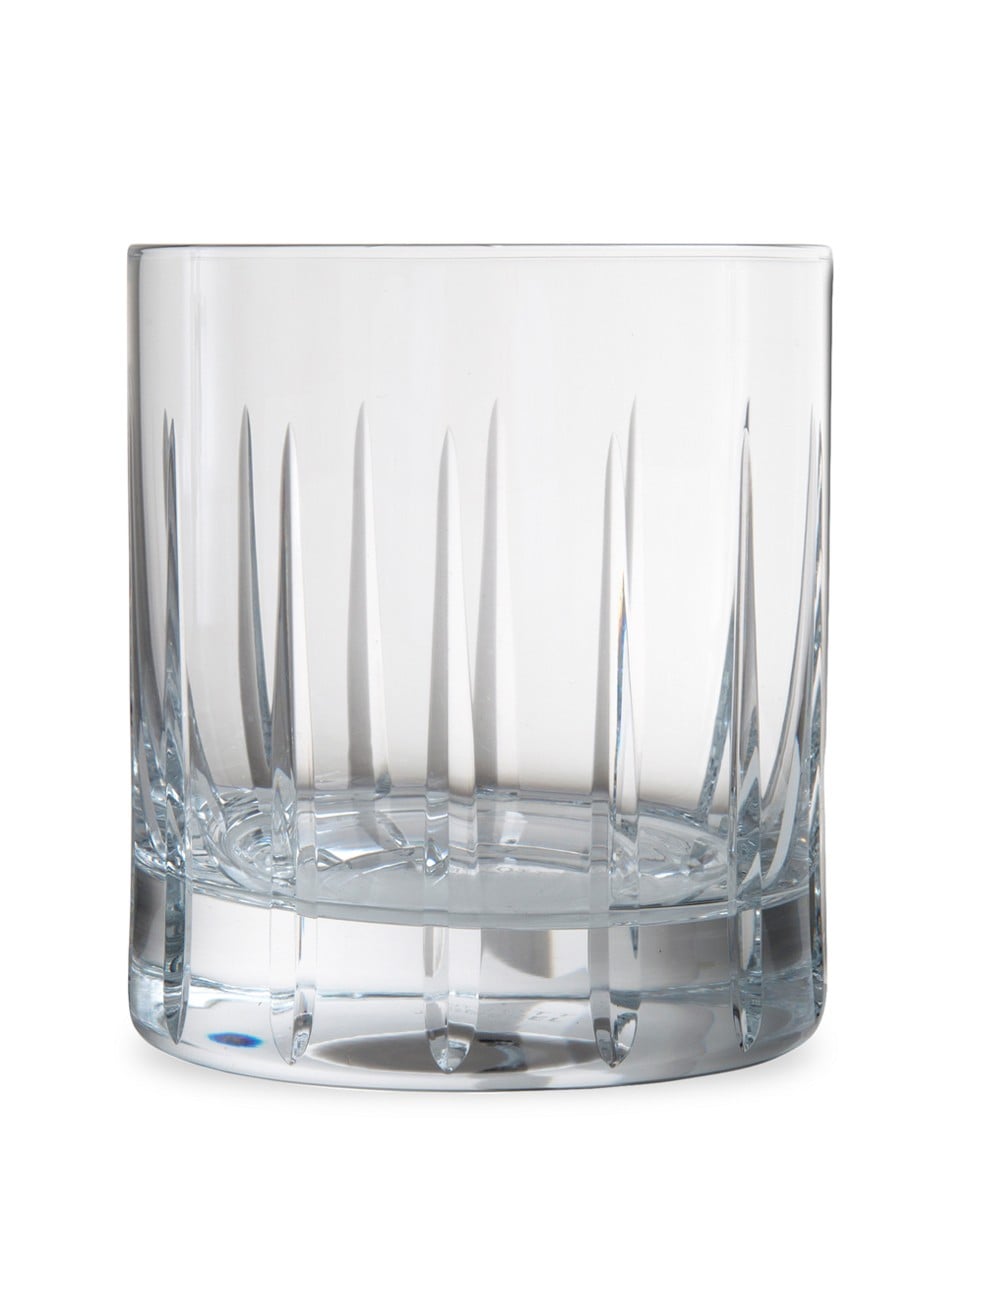 Schott Zwiesel Aberdeen Martini Glasses, Set of 2, Clear